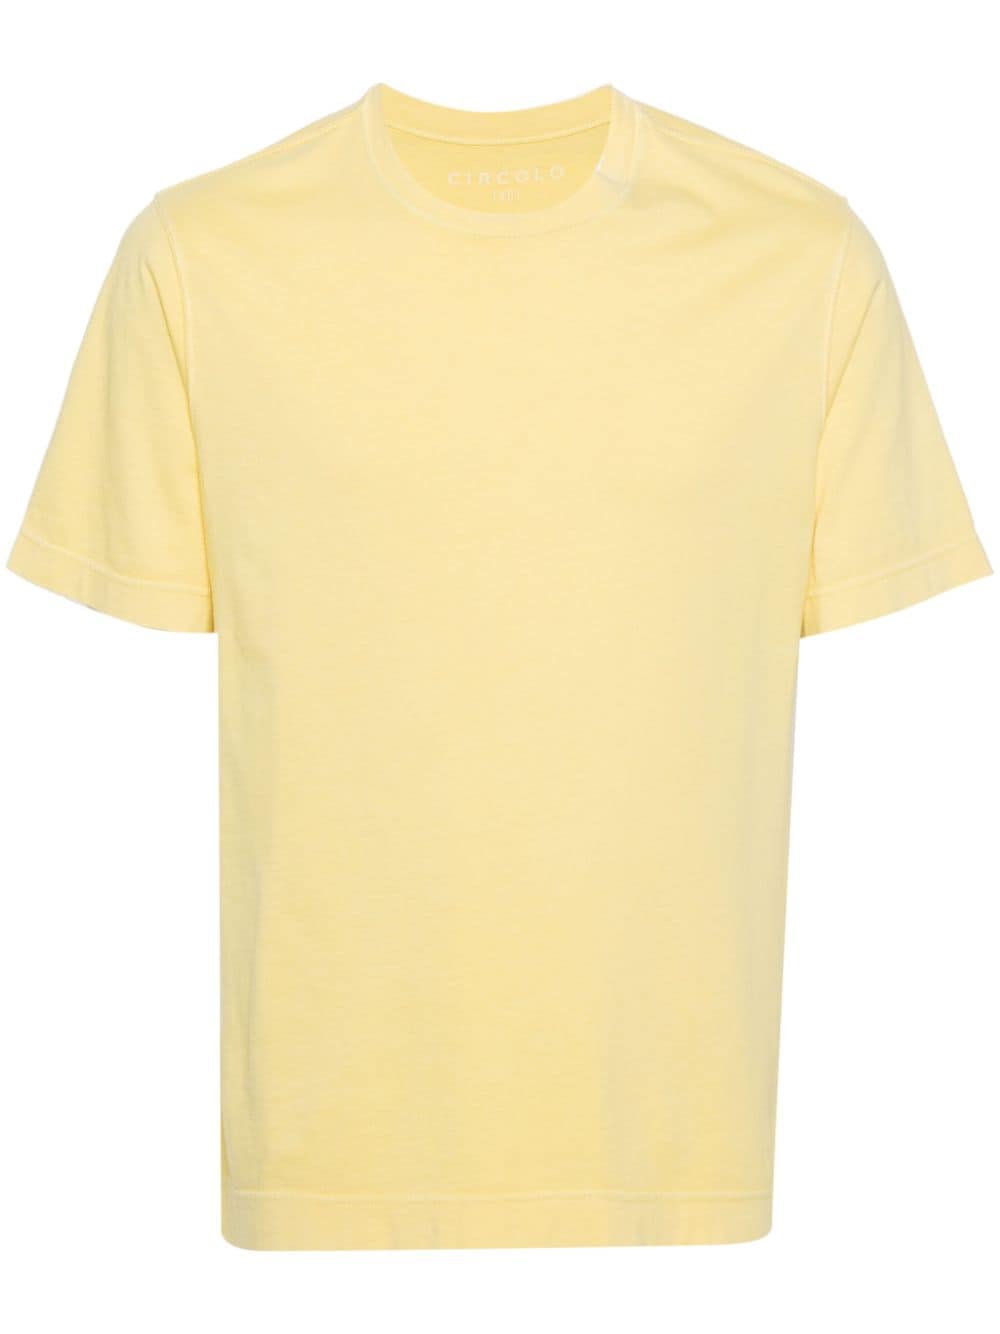 circolo 1901 t-shirt en coton à manches courtes - jaune